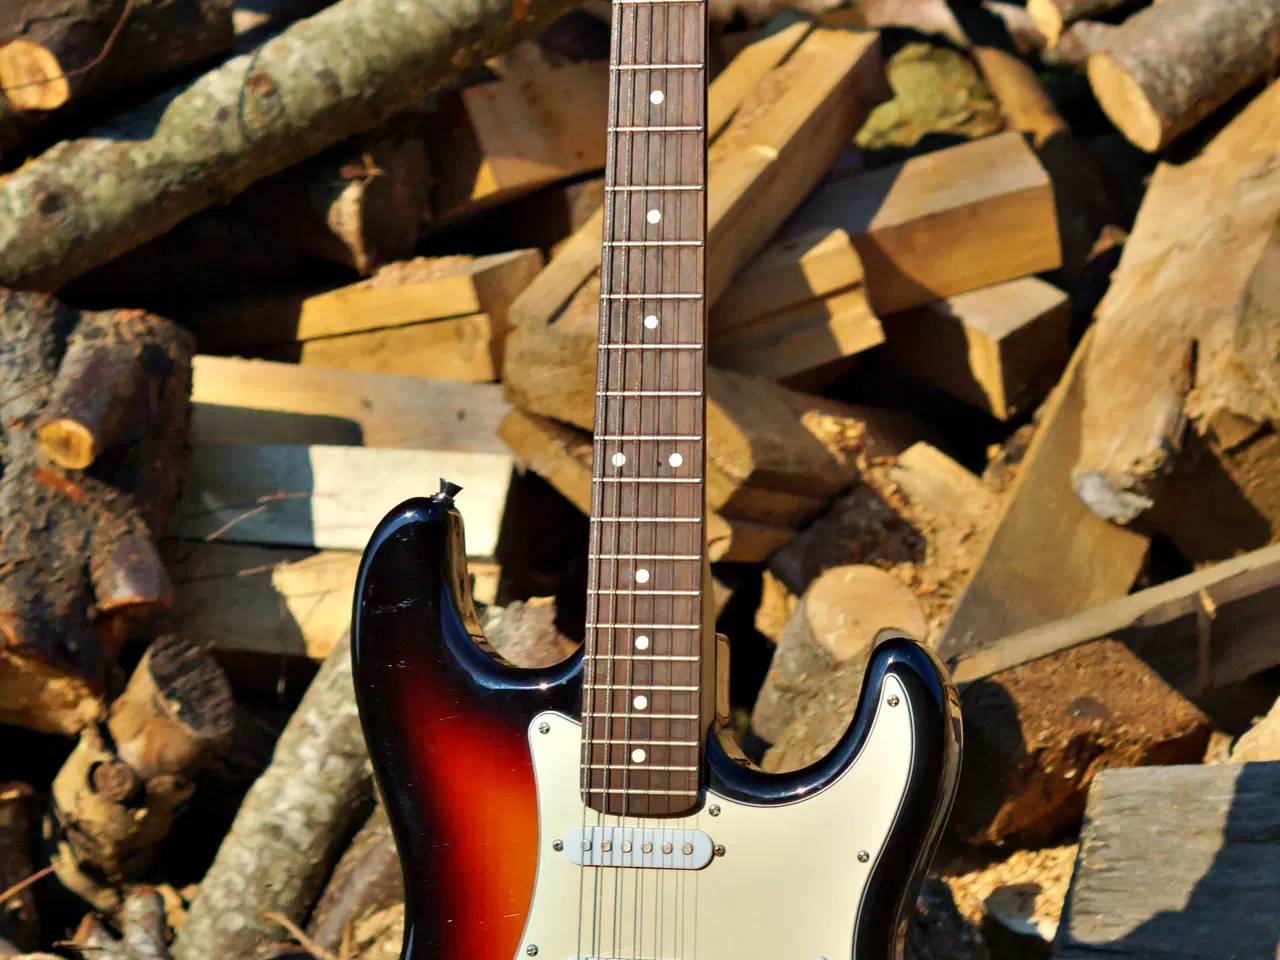 Billede 1 - Stratocaster guitar fra Chateau fabrikken